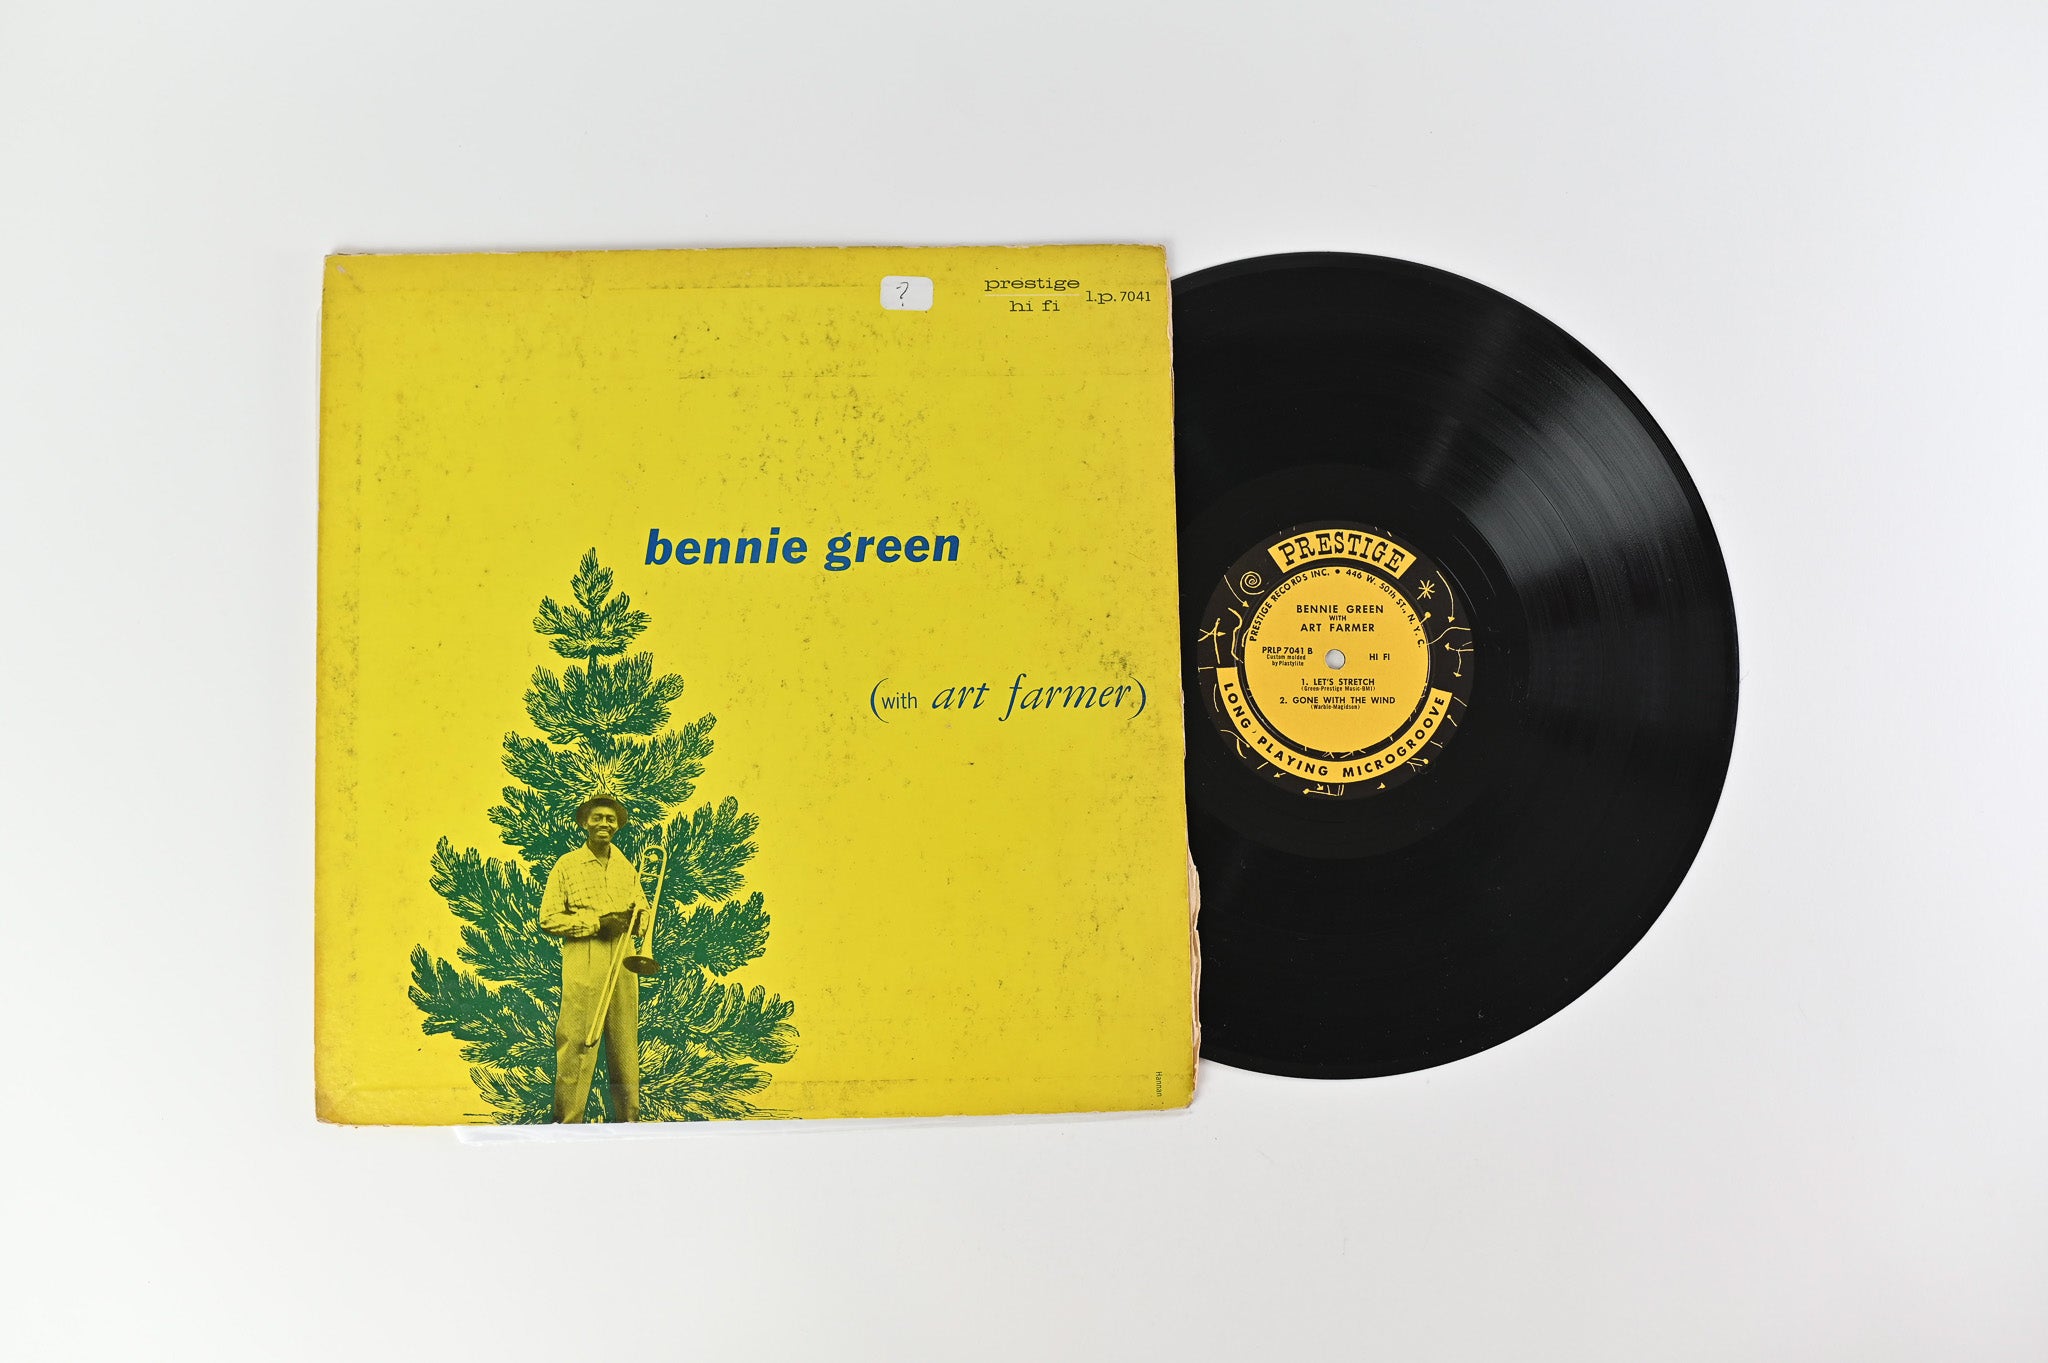 Bennie Green - Bennie Green (With Art Farmer) on Prestige – PRLP 7041 DG Mono